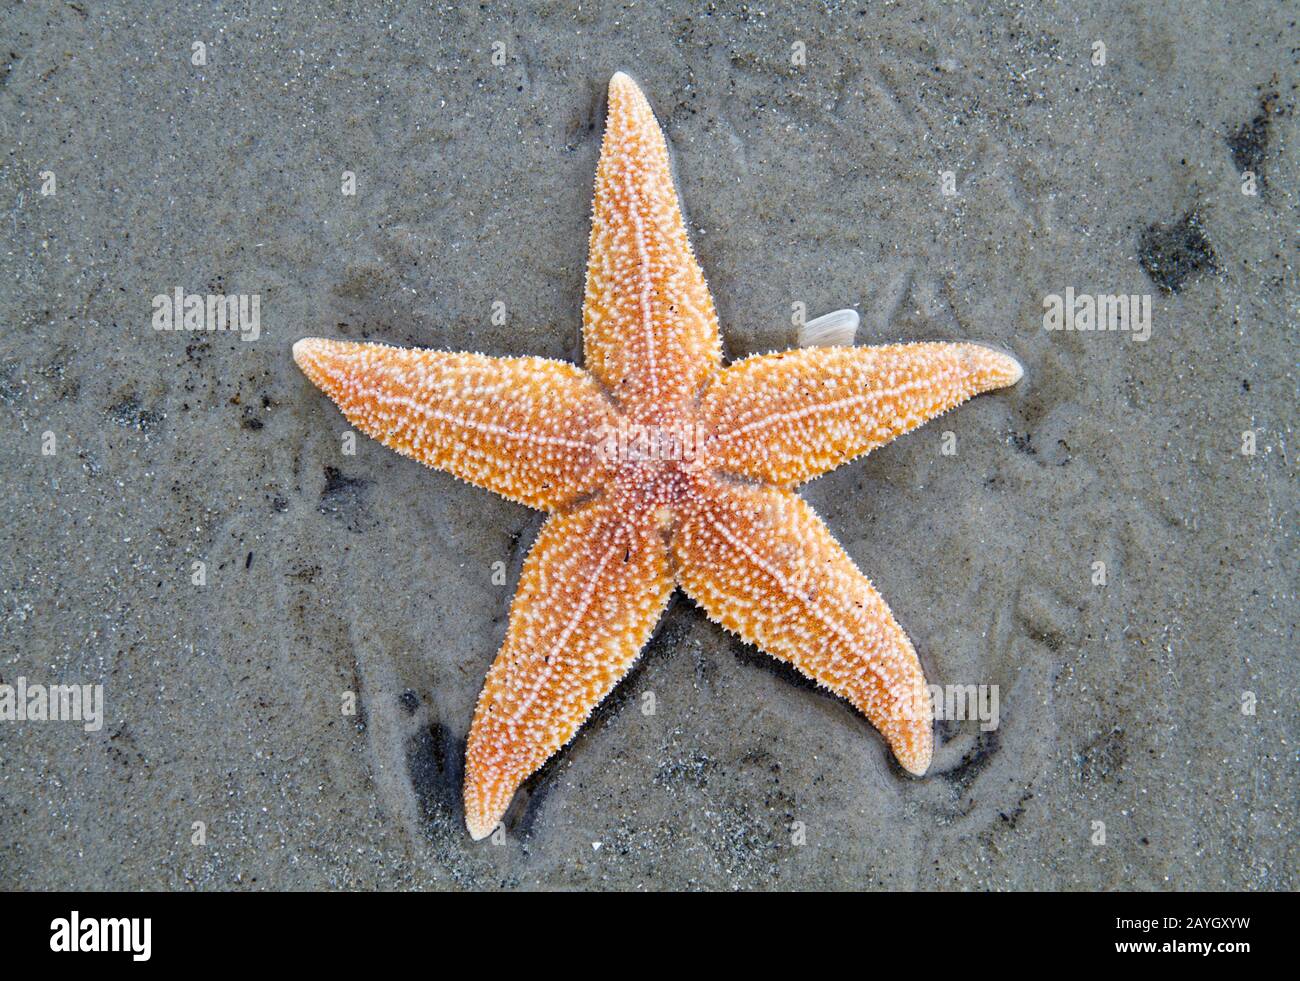 Gestrandeter Toter Common Starfish, der an einem sandigen Strand liegt Stockfoto